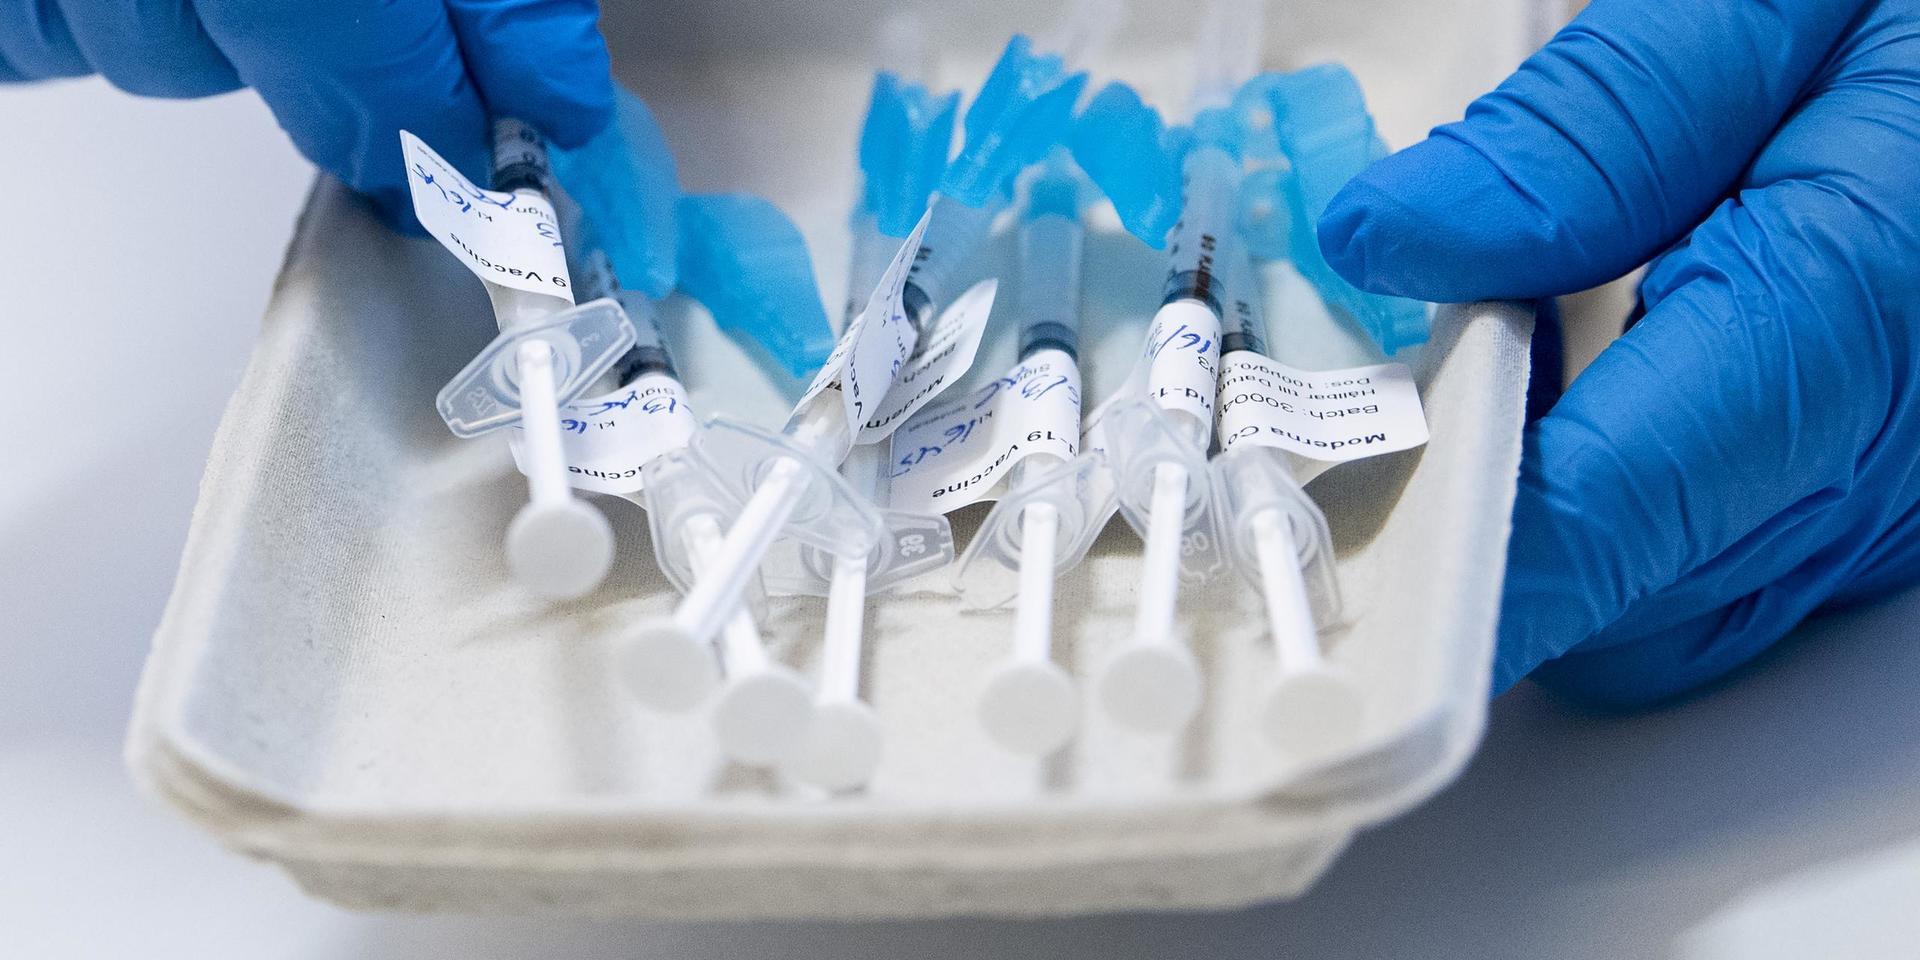 Sveriges chanser att nå vaccinmålet ser ut att gå upp i rök.